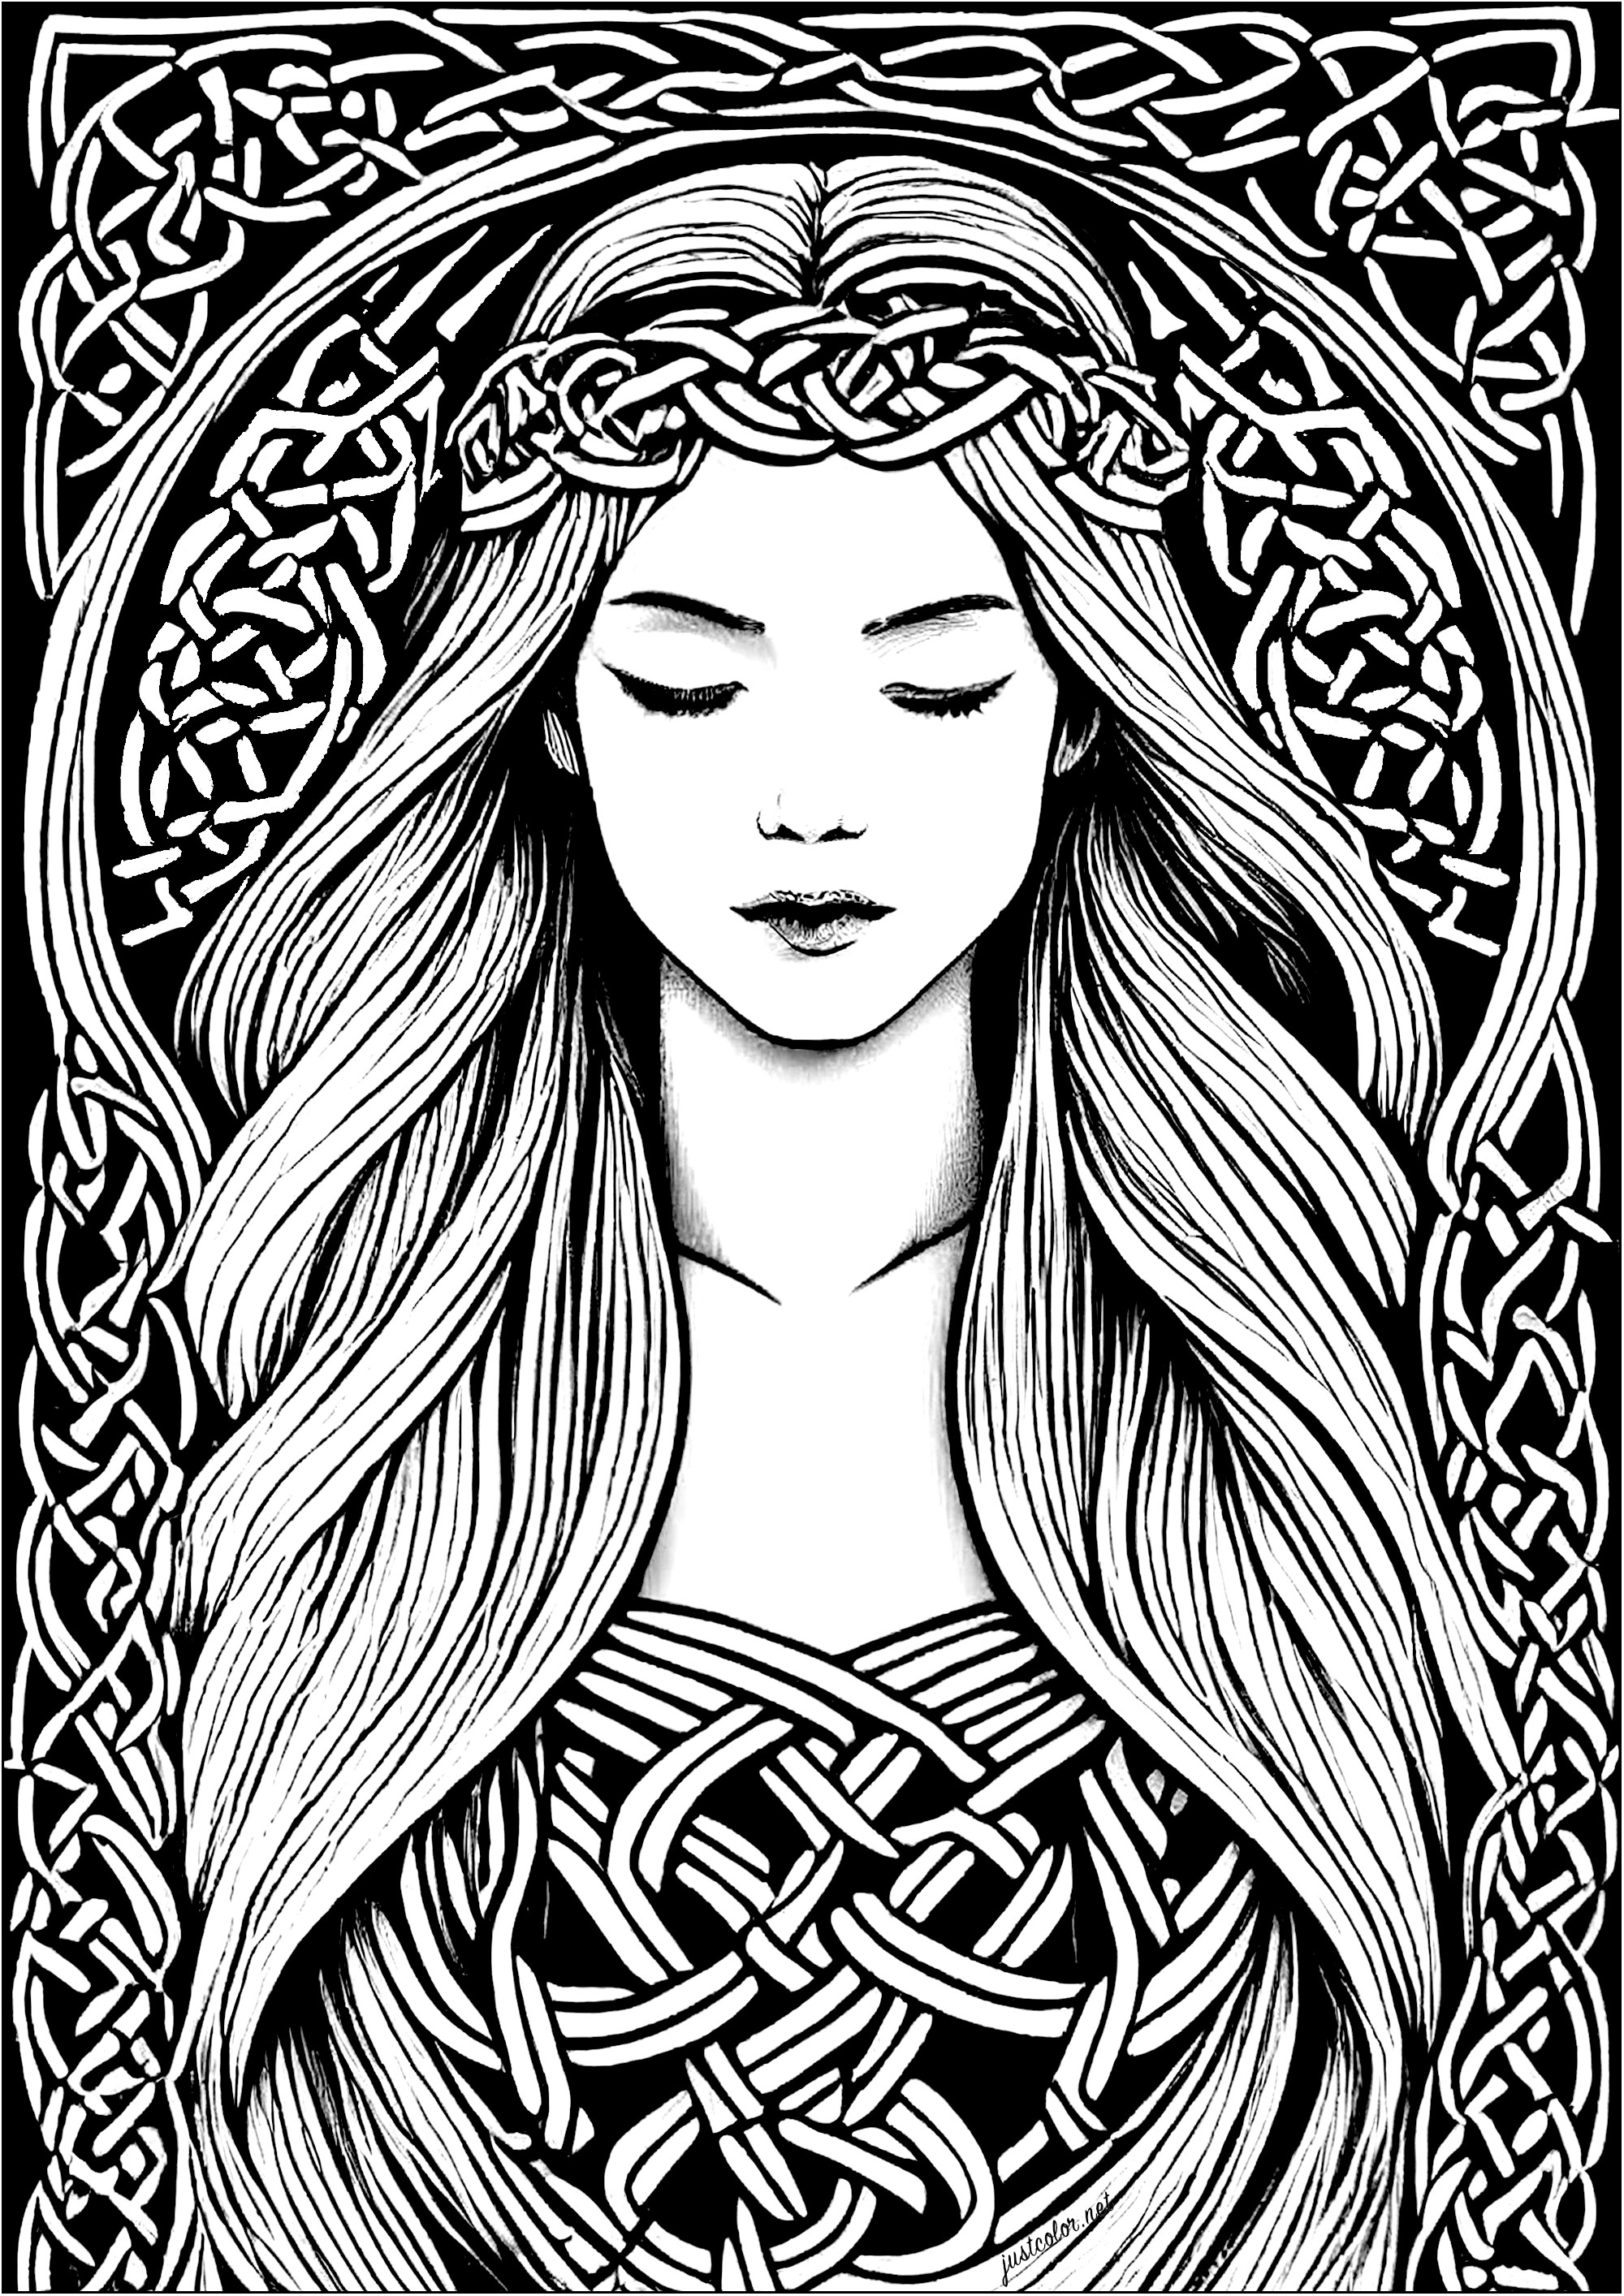 Ausmalung einer schlafenden jungen Frau, inspiriert von keltischer Kunst. Die Motive des gesamten Entwurfs sind von keltischen Motiven inspiriert, die sich durch ihre verschlungenen, wurzelartigen Pflanzenformen auszeichnen.